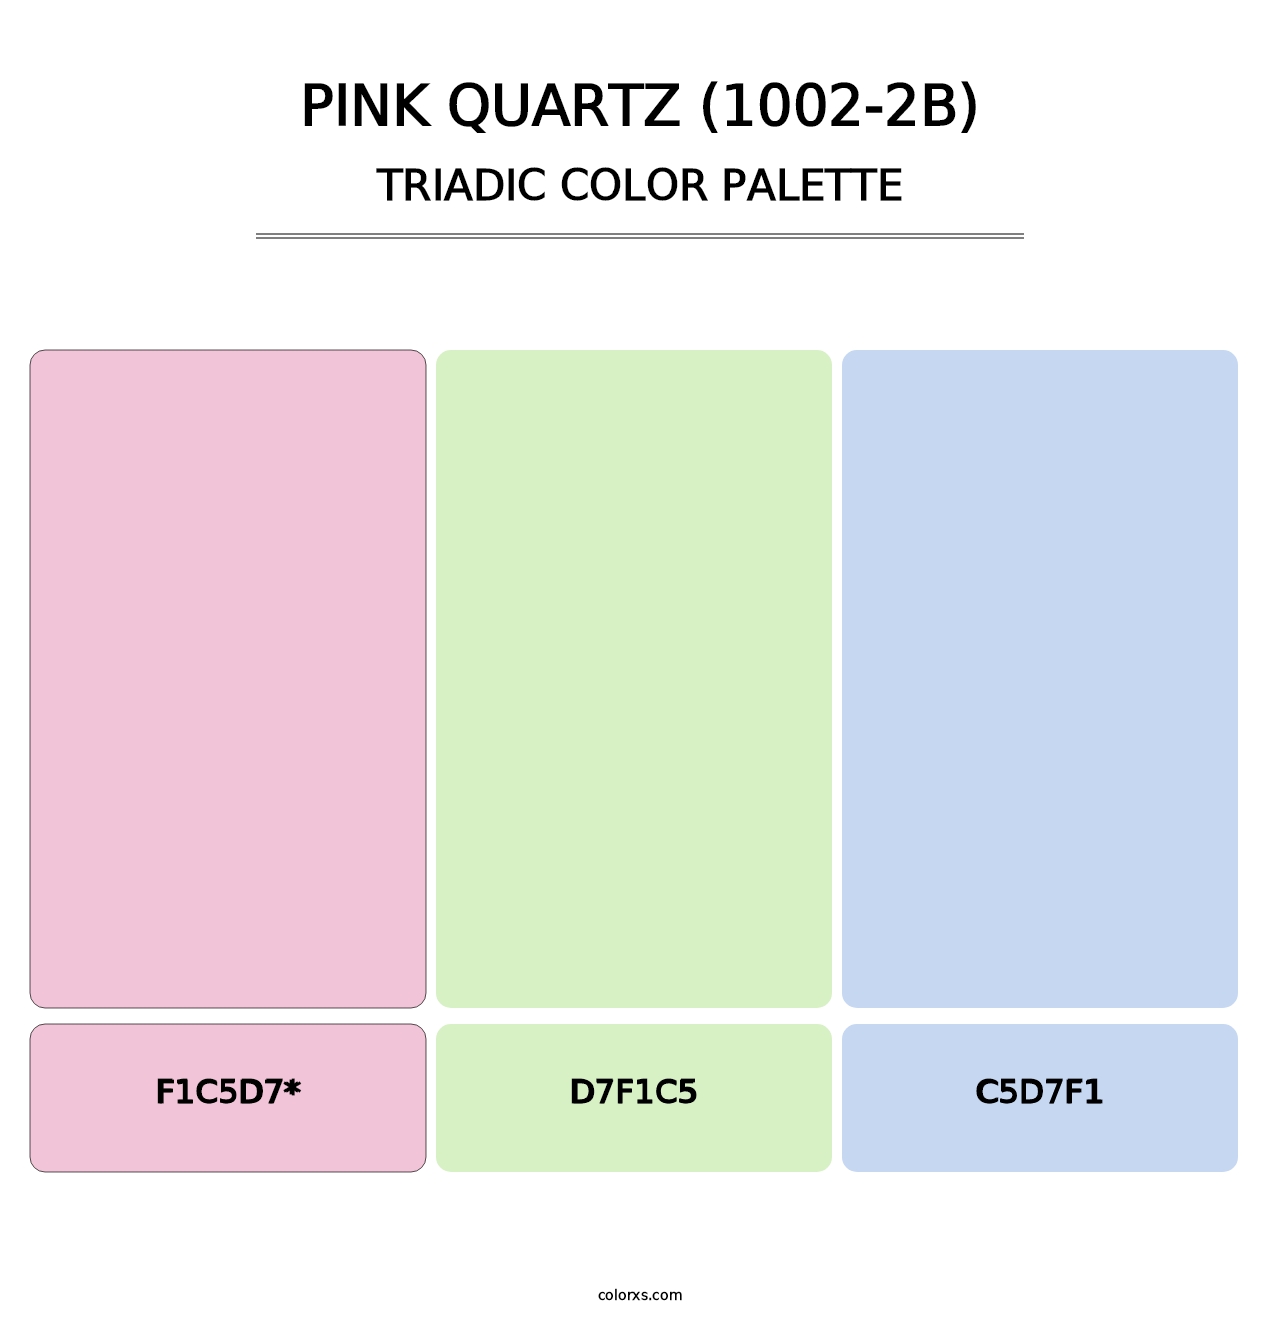 Pink Quartz (1002-2B) - Triadic Color Palette